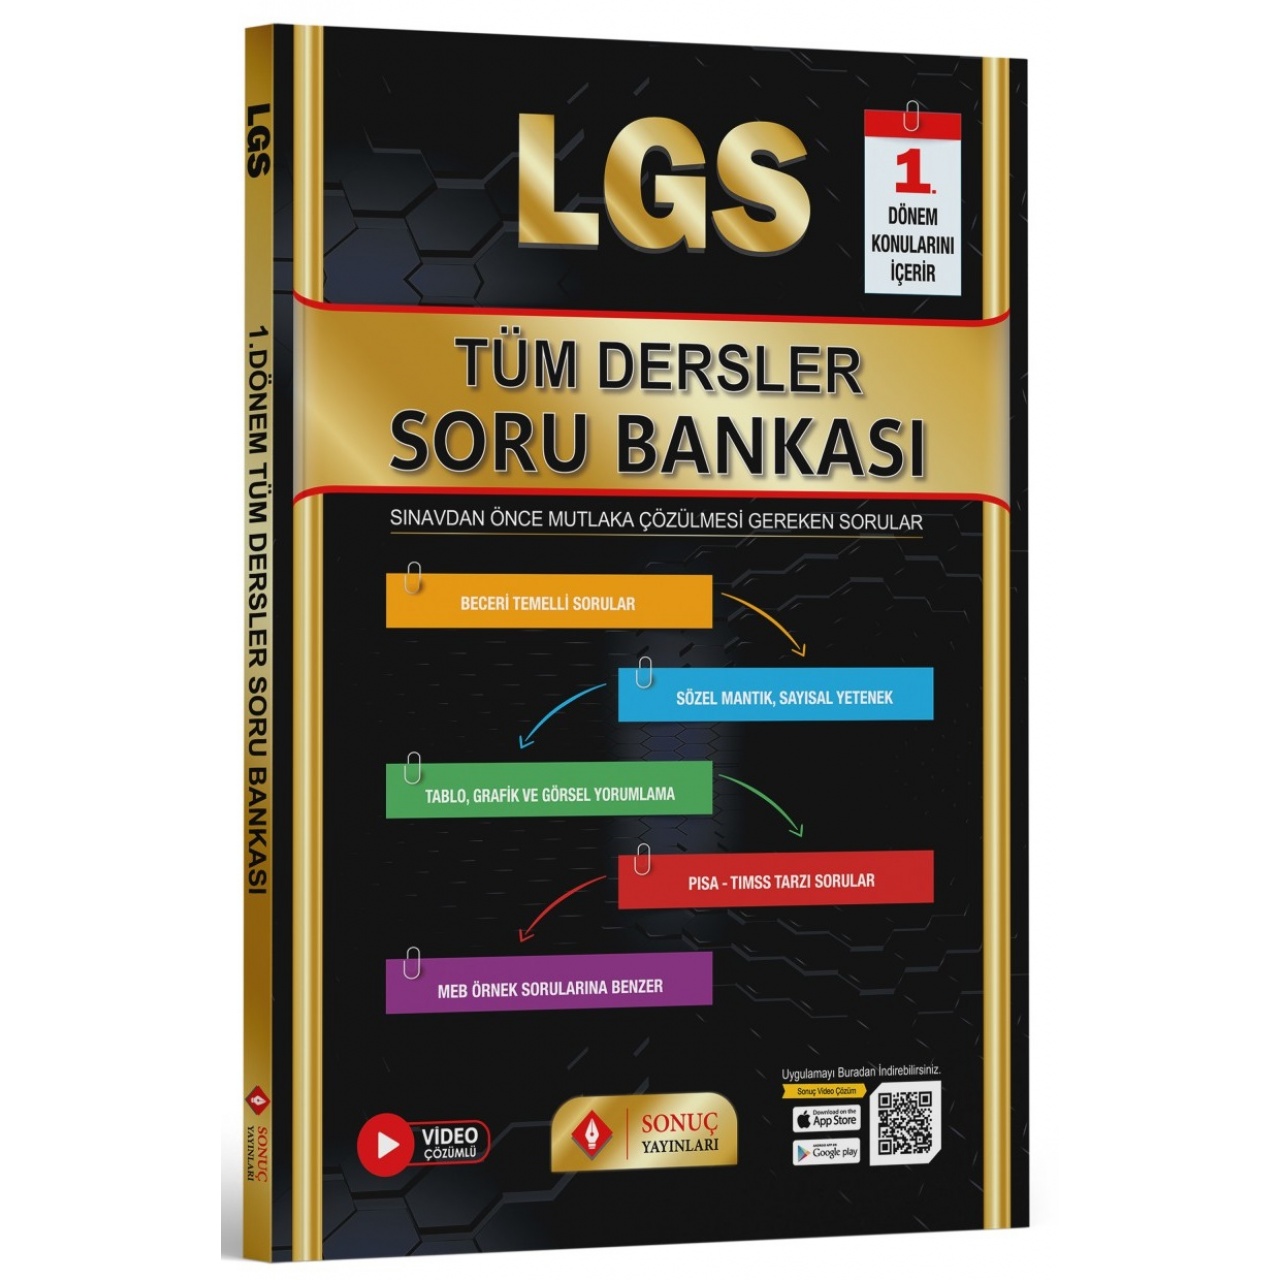 8. Sınıf LGS Tüm Dersler Soru Bankası 1.Dönem Sonuç Yayınları